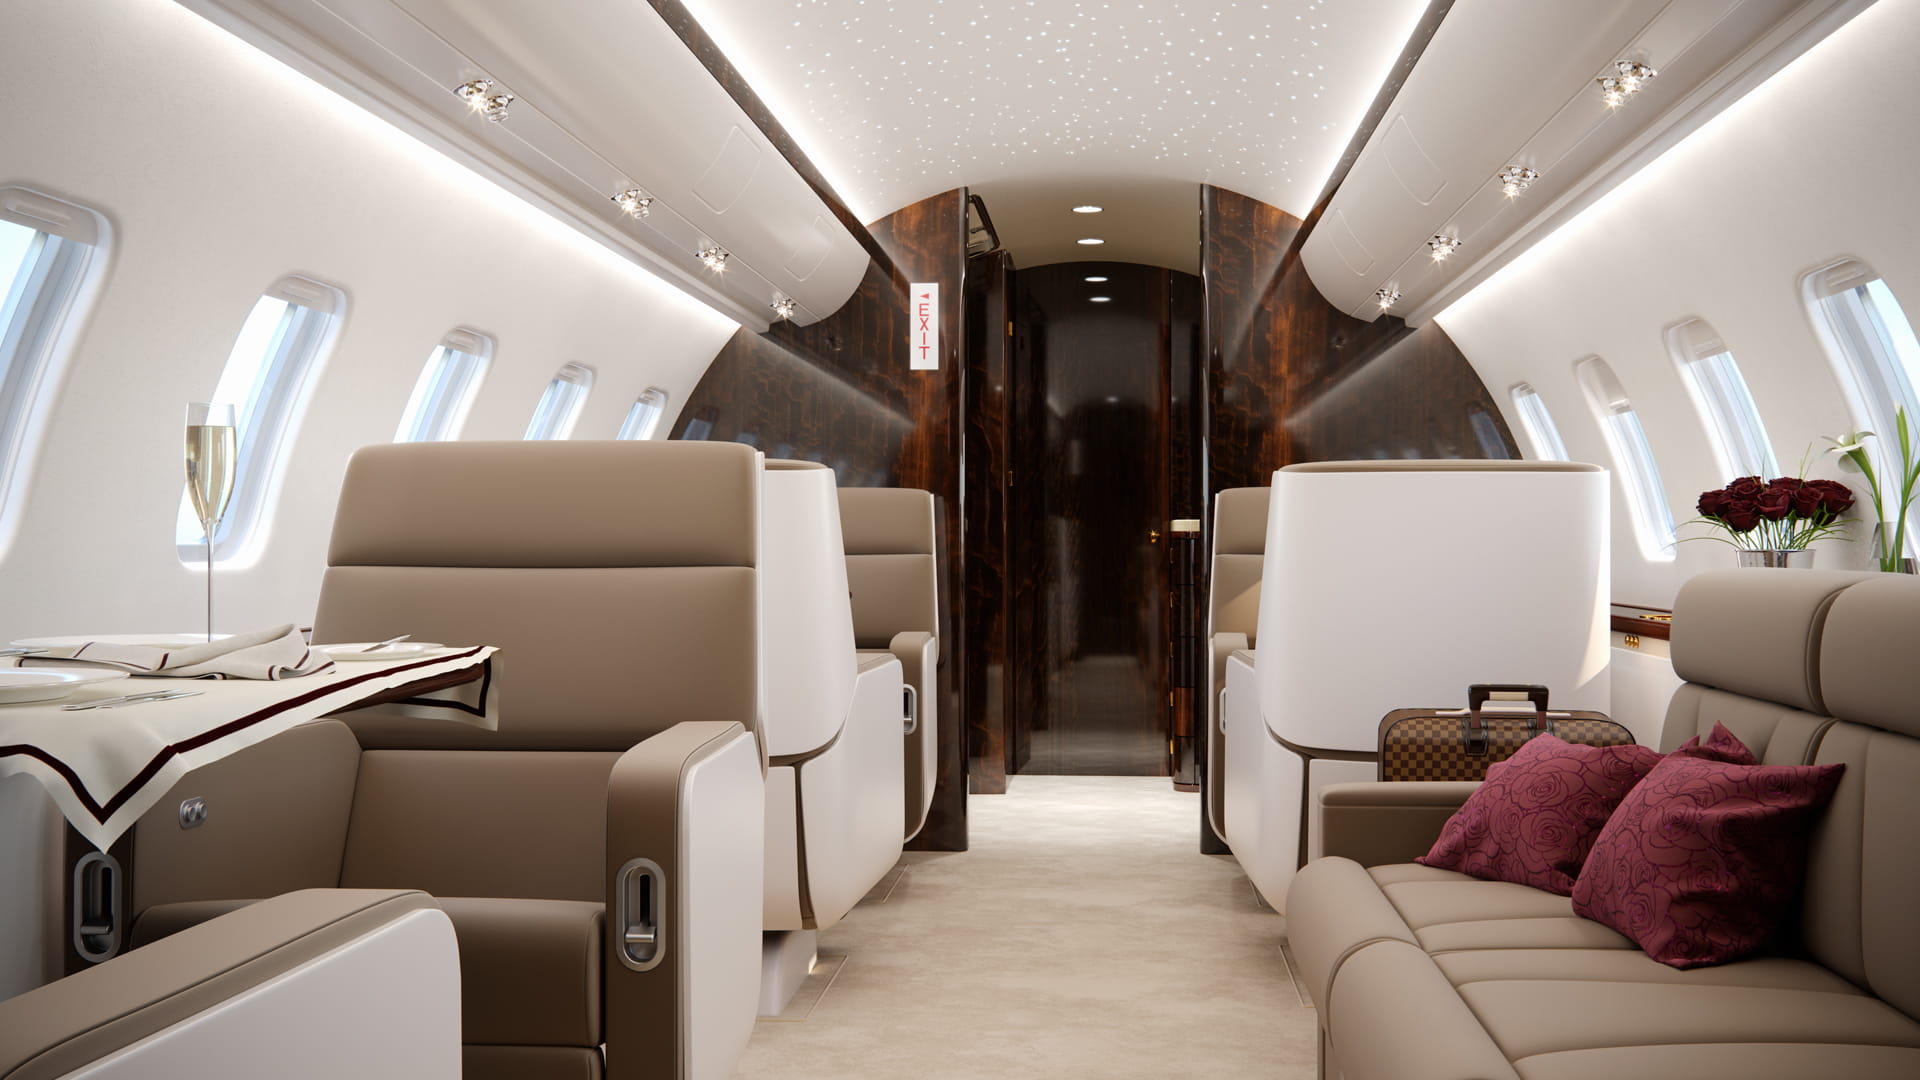 Inside luxury jet lounge